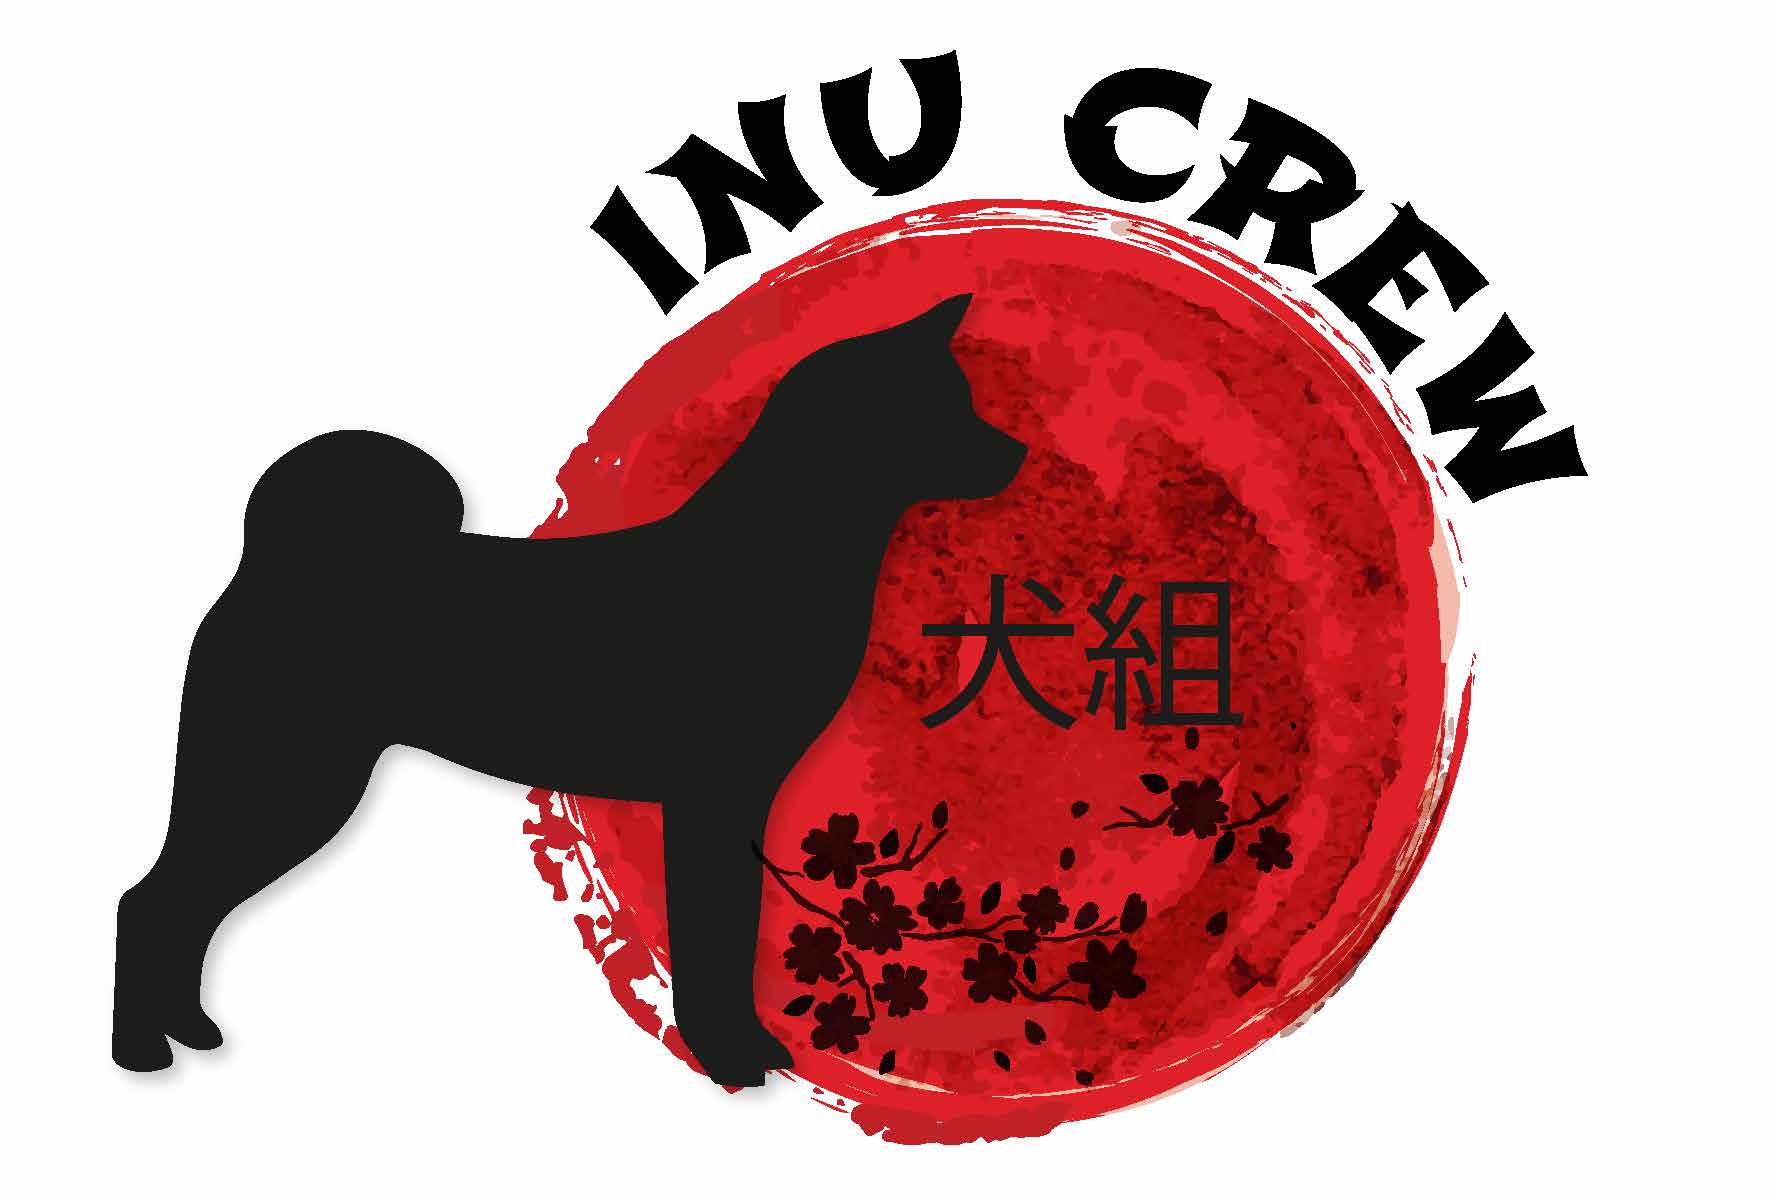 Inu Crew